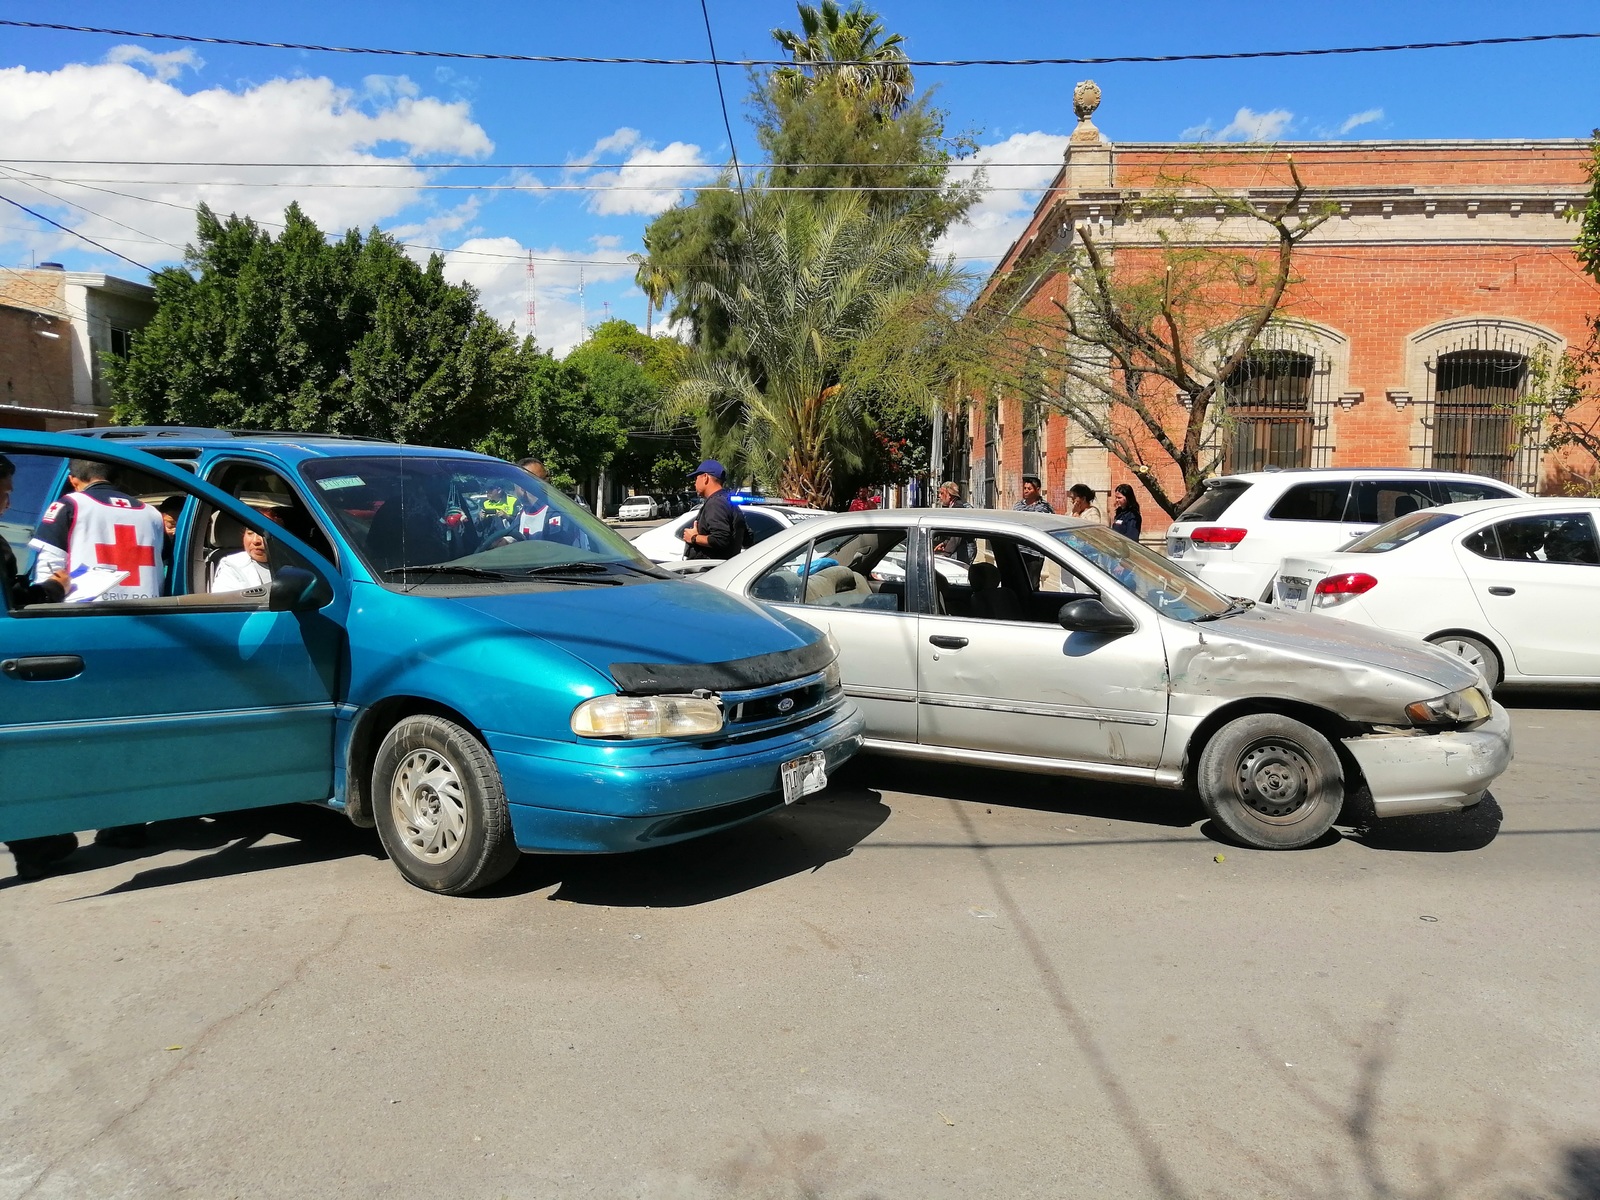 Conductoras de camioneta y auto chocan en la equina de la calle Zaragoza y avenida Bravo del sector Centro de Gómez Palacio, no se reportaron lesionados.